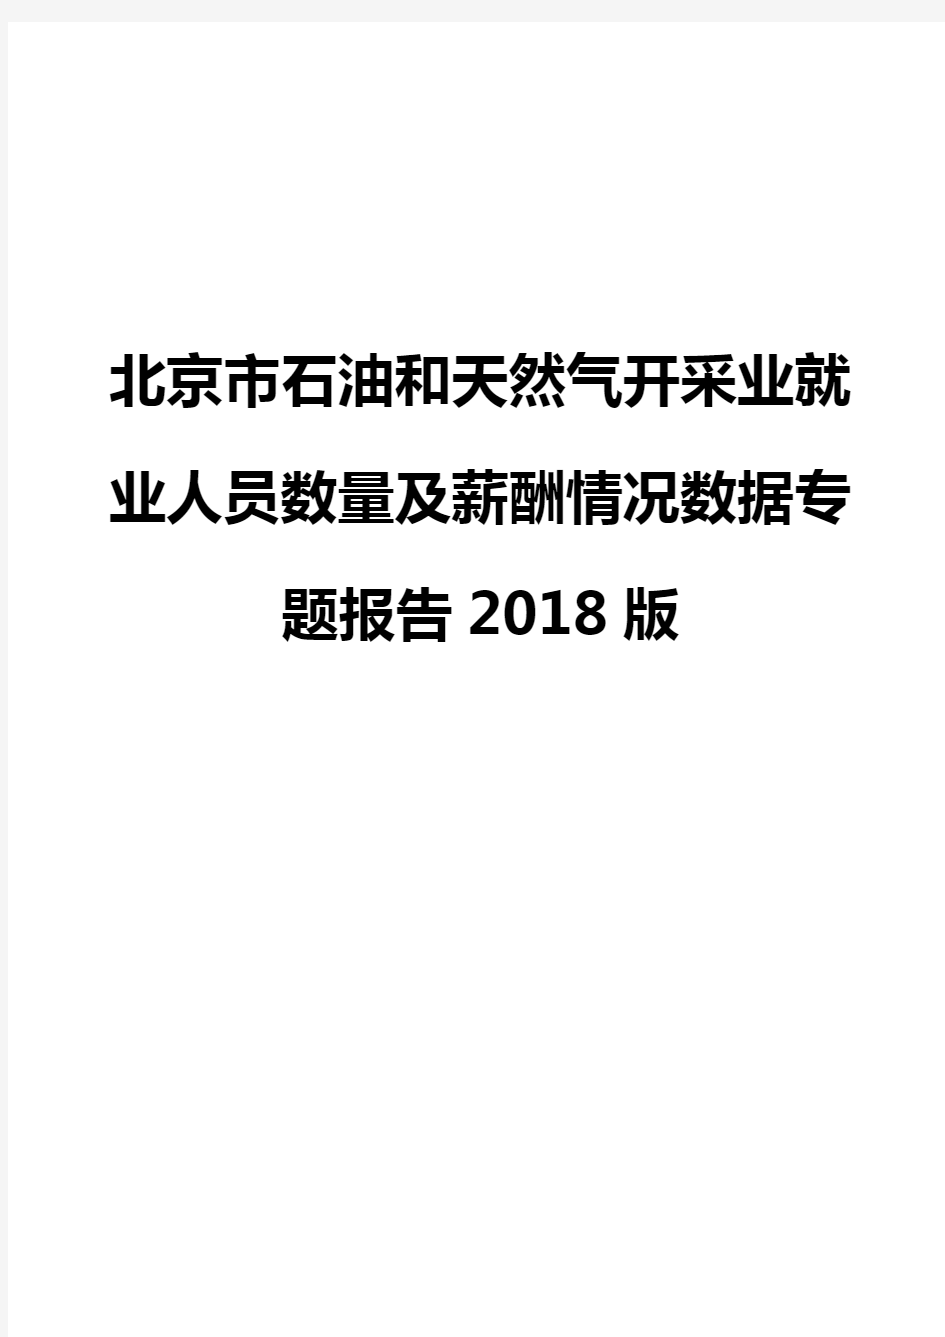 北京市石油和天然气开采业就业人员数量及薪酬情况数据专题报告2018版